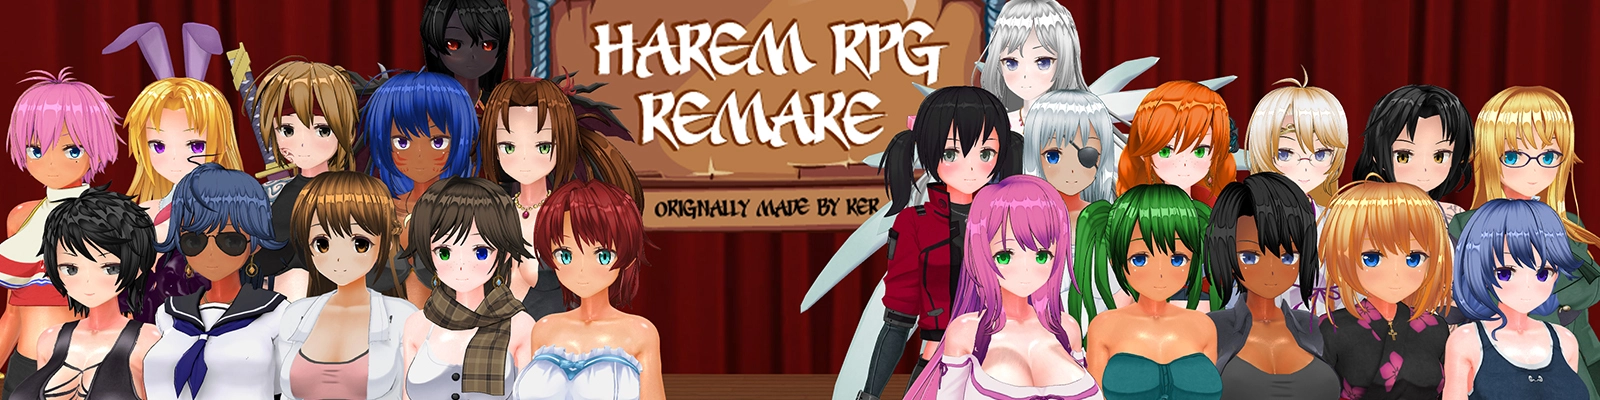 Harem RPG Unofficial Remake header image